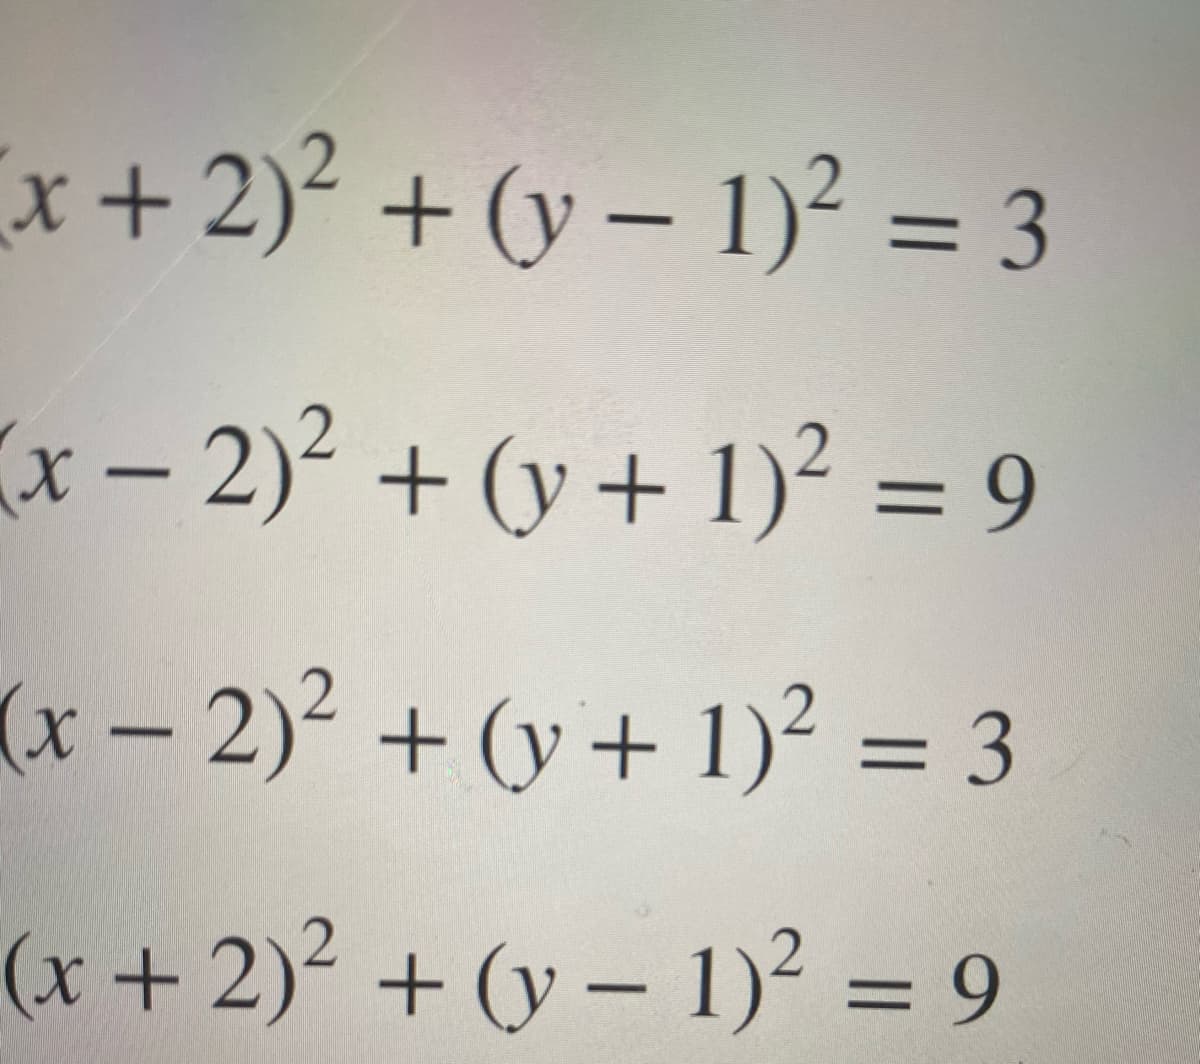 x+2)² + (y – 1)² = 3
%3D
(x-2) + (y+ 1)² = 9
%3D
(x-2)² + (y + 1)² = 3
(x + 2)² + (y – 1)² = 9
